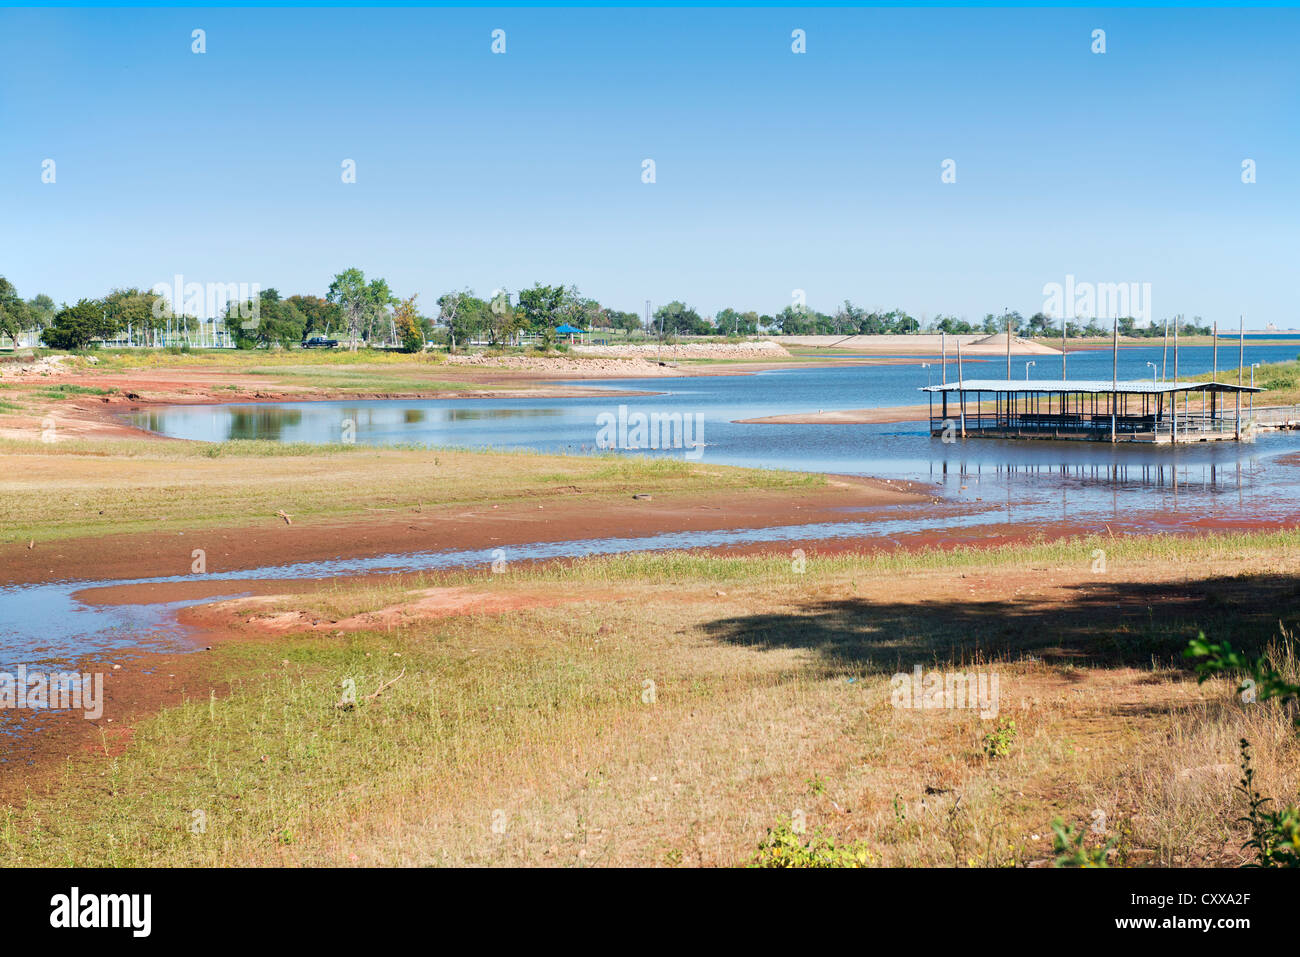 Lago Hefner en Oklahoma City que muestran los efectos de una grave sequía en Oklahoma, 2012. Ee.Uu.. Foto de stock